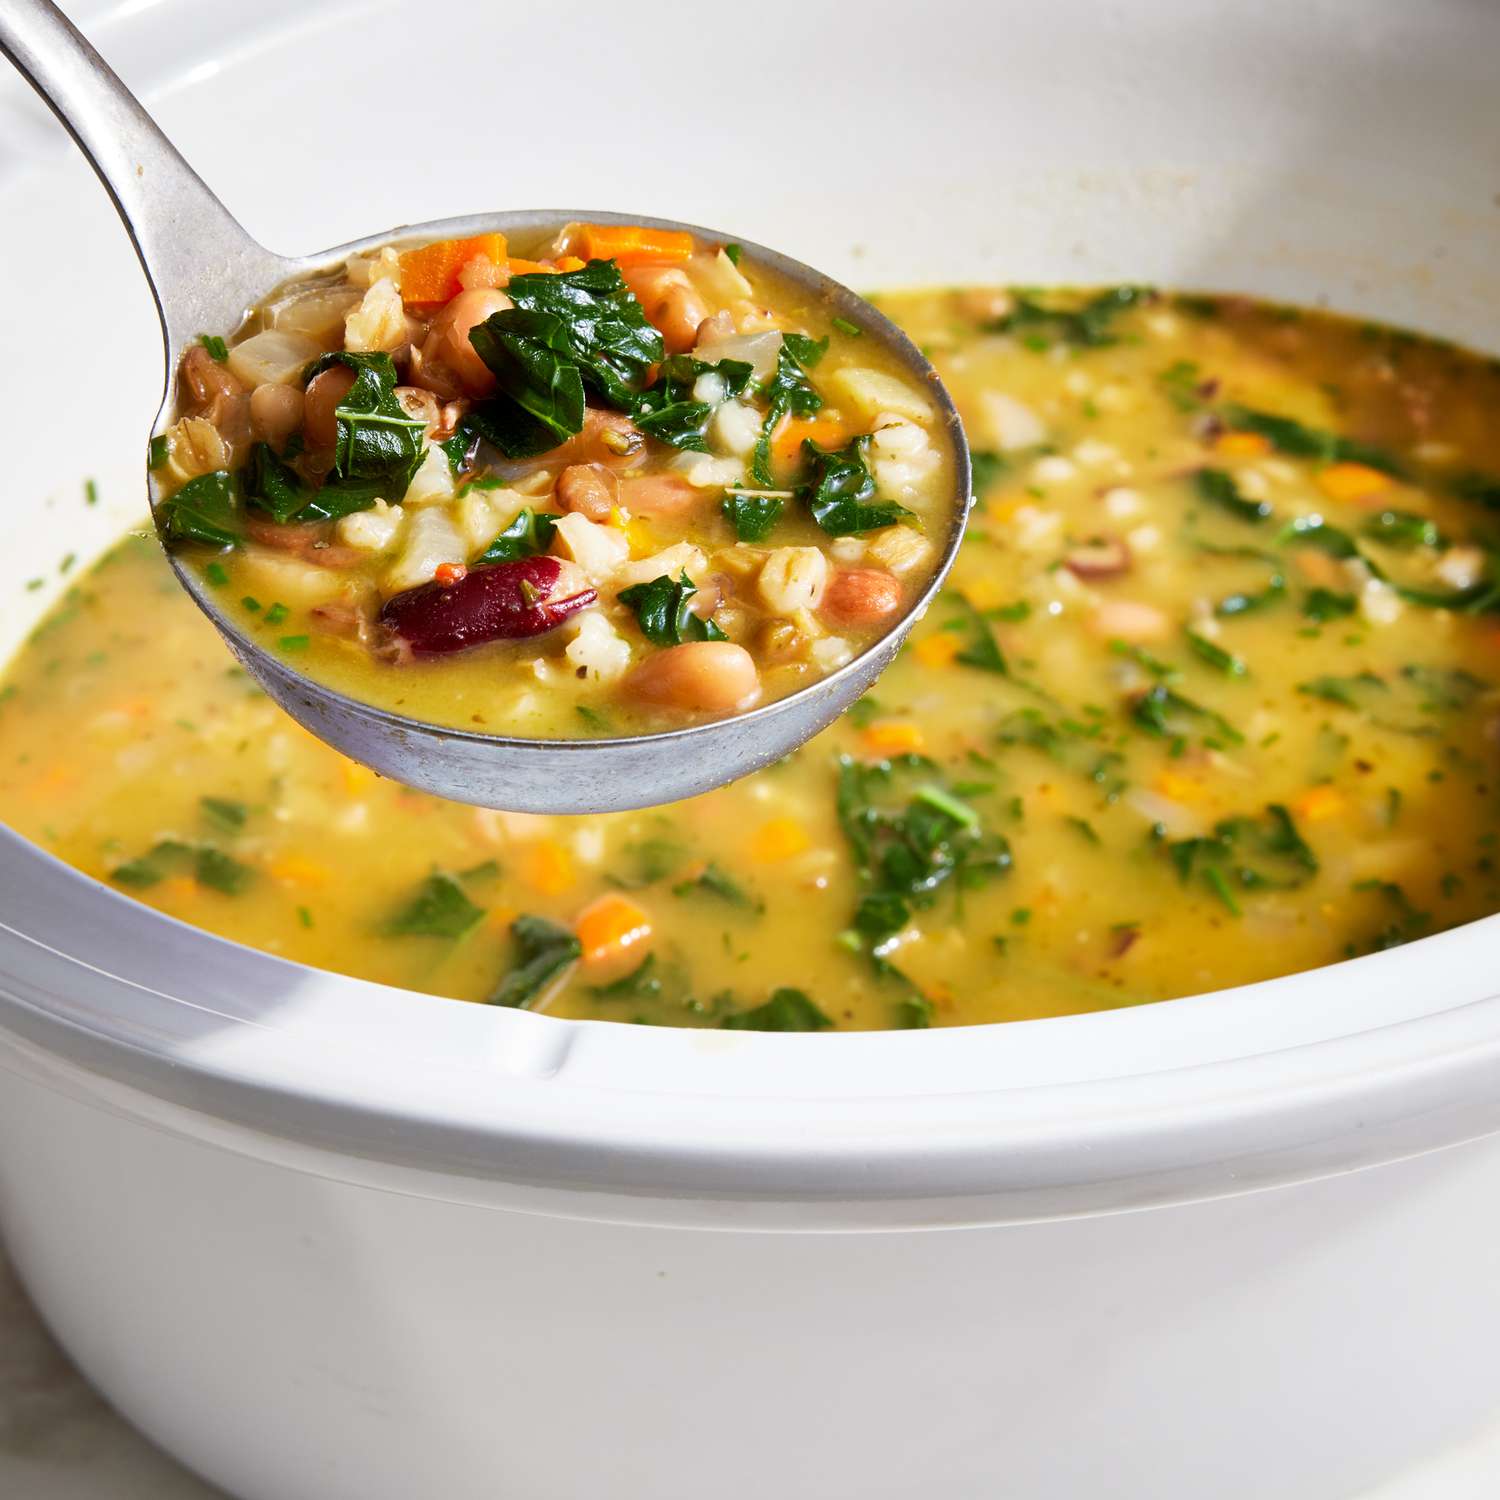 Foto de la receta de sopa de col rizada y cebada en olla de cocción lenta